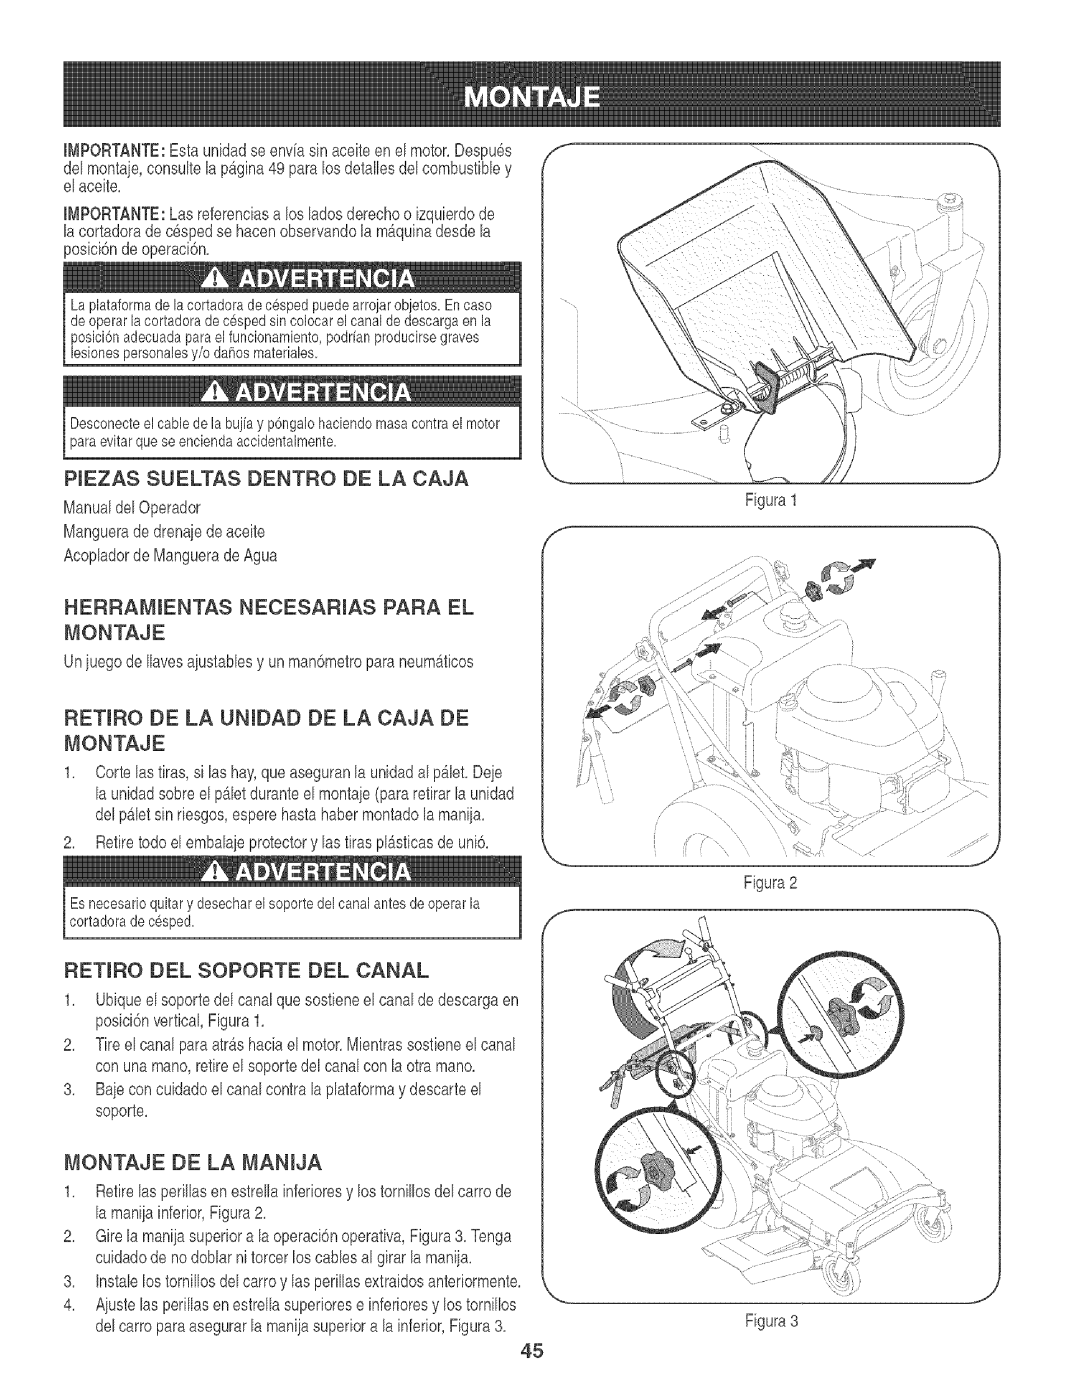 Craftsman 247.88933 manual Piezas Sueltas Dentro De La Caja, Herramientas, Necesarias, Para El, Montaje De La Manija 